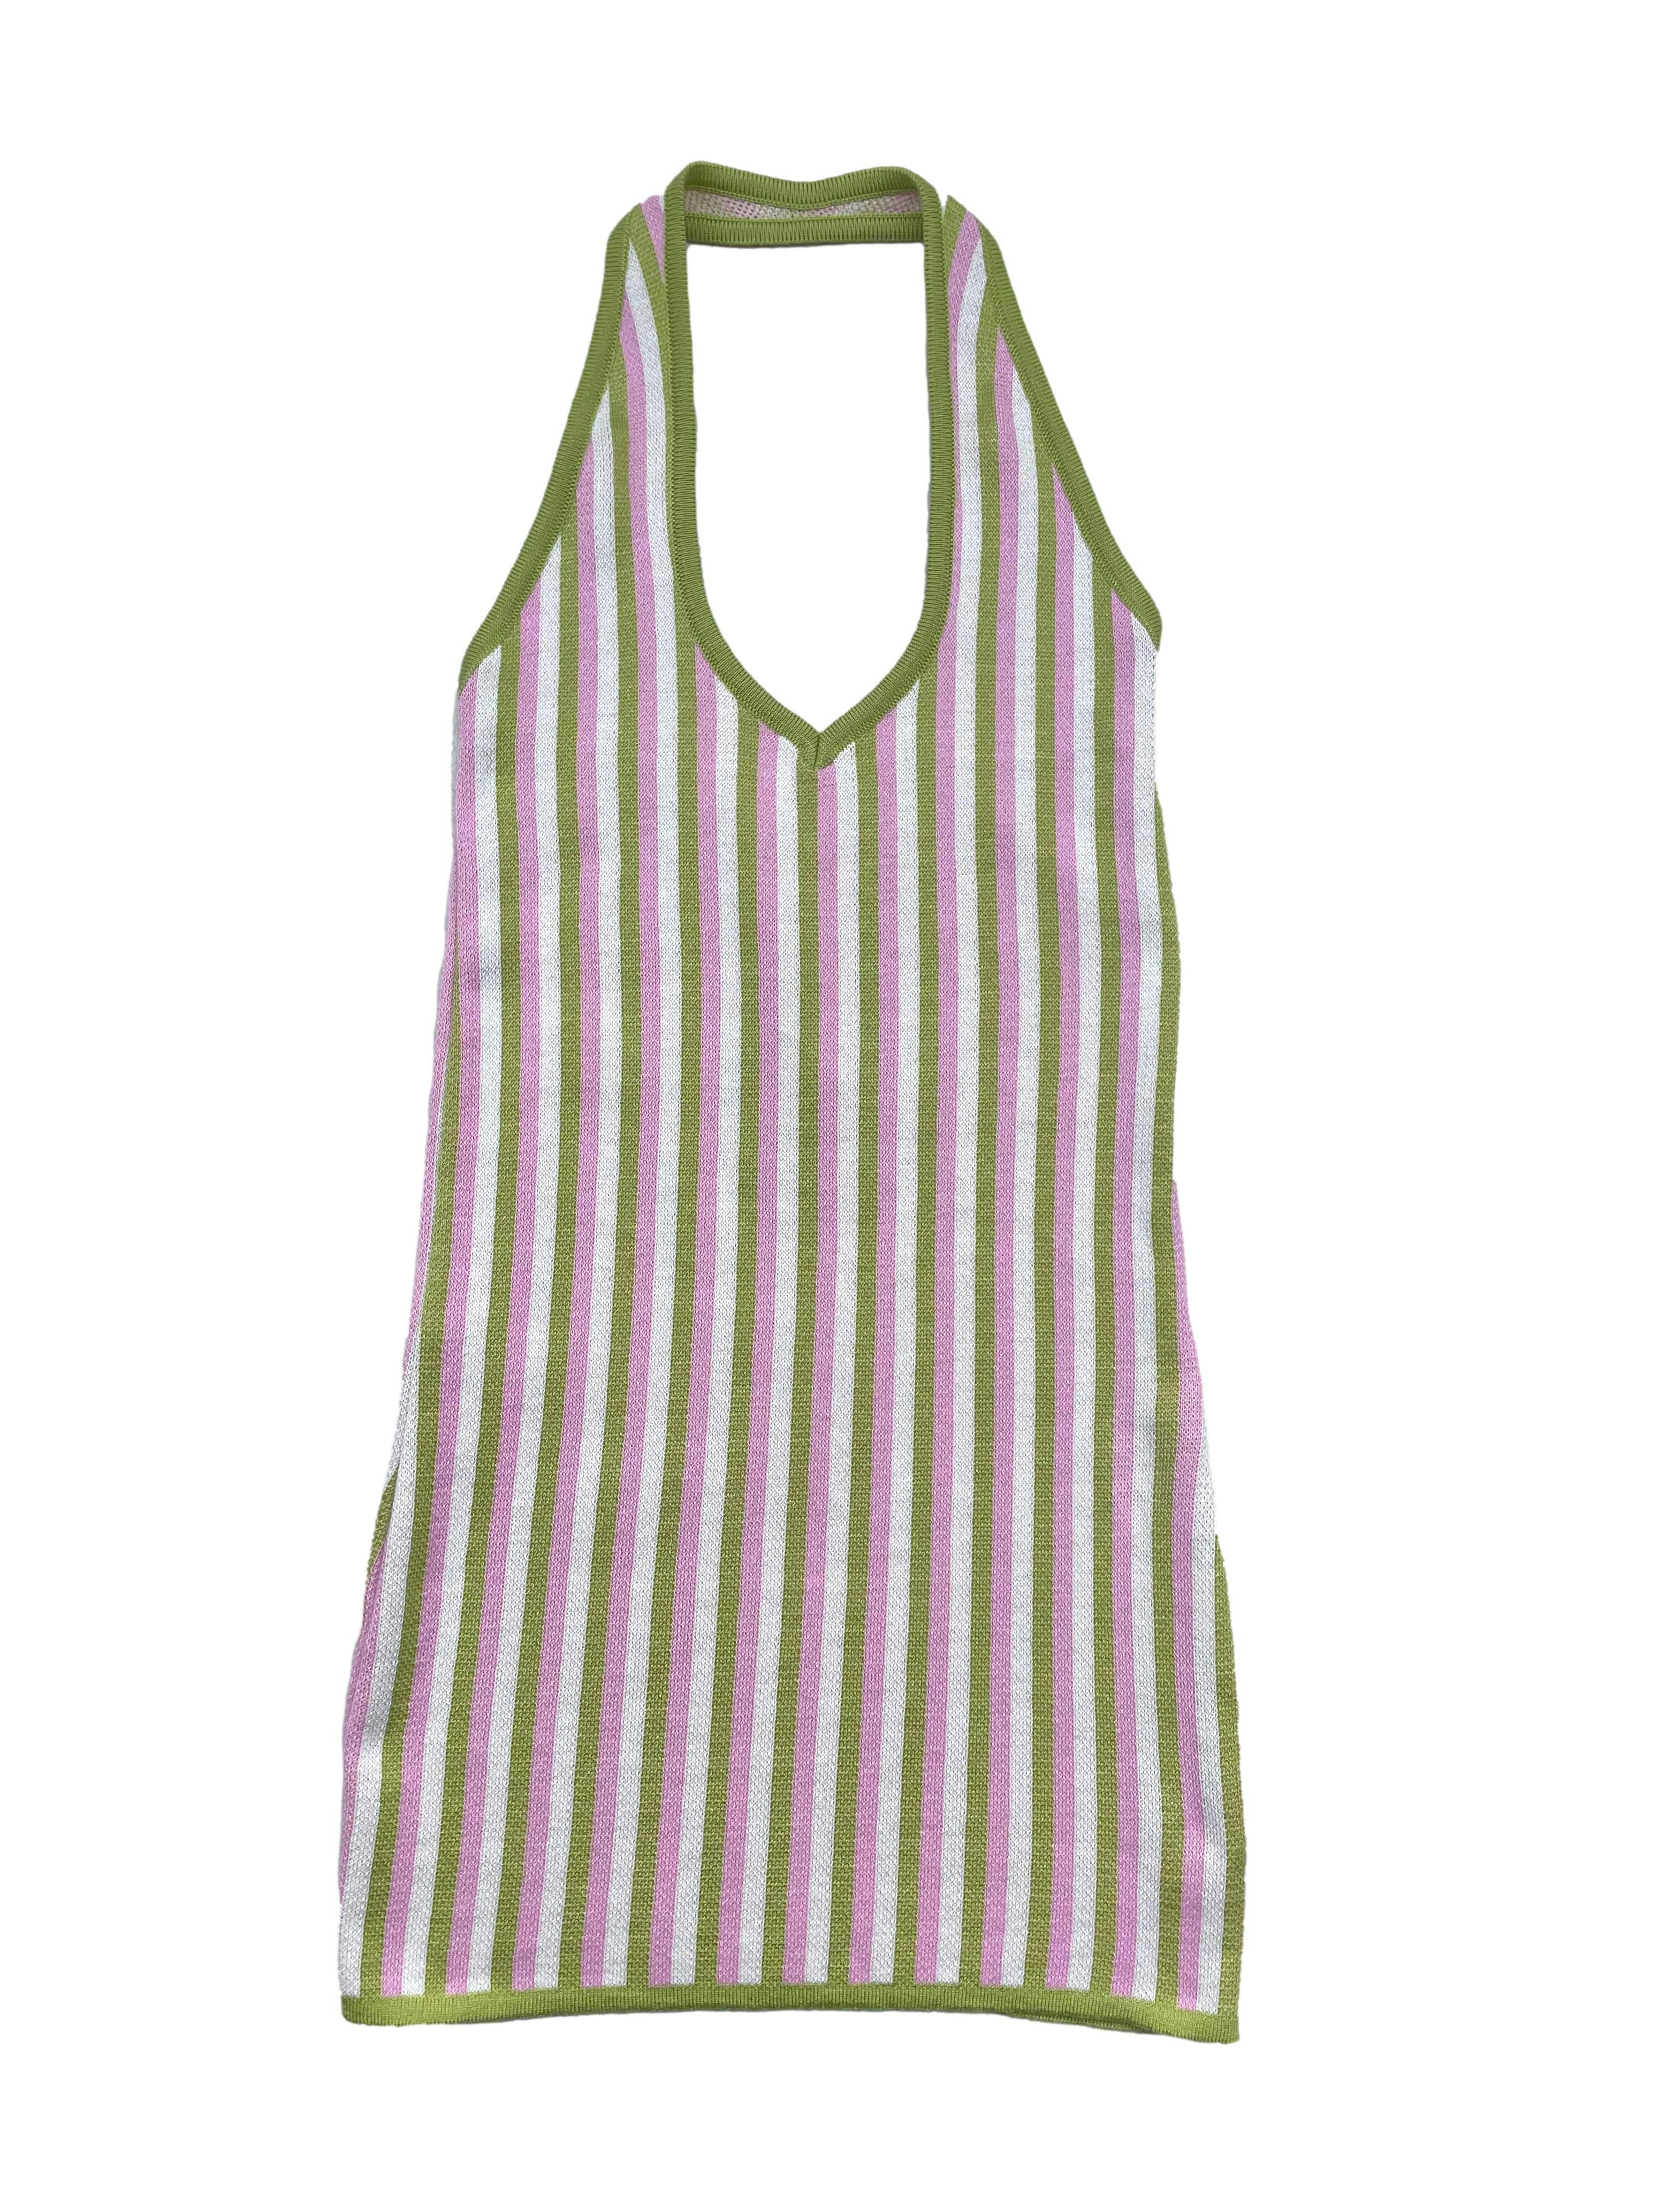 Vestido knit Meh, a rayas en verde y rosado, modelo entallado, cuello halter con escote en V. Busto 66cm sin estirar, Largo 80cm. Precio original S/ 199